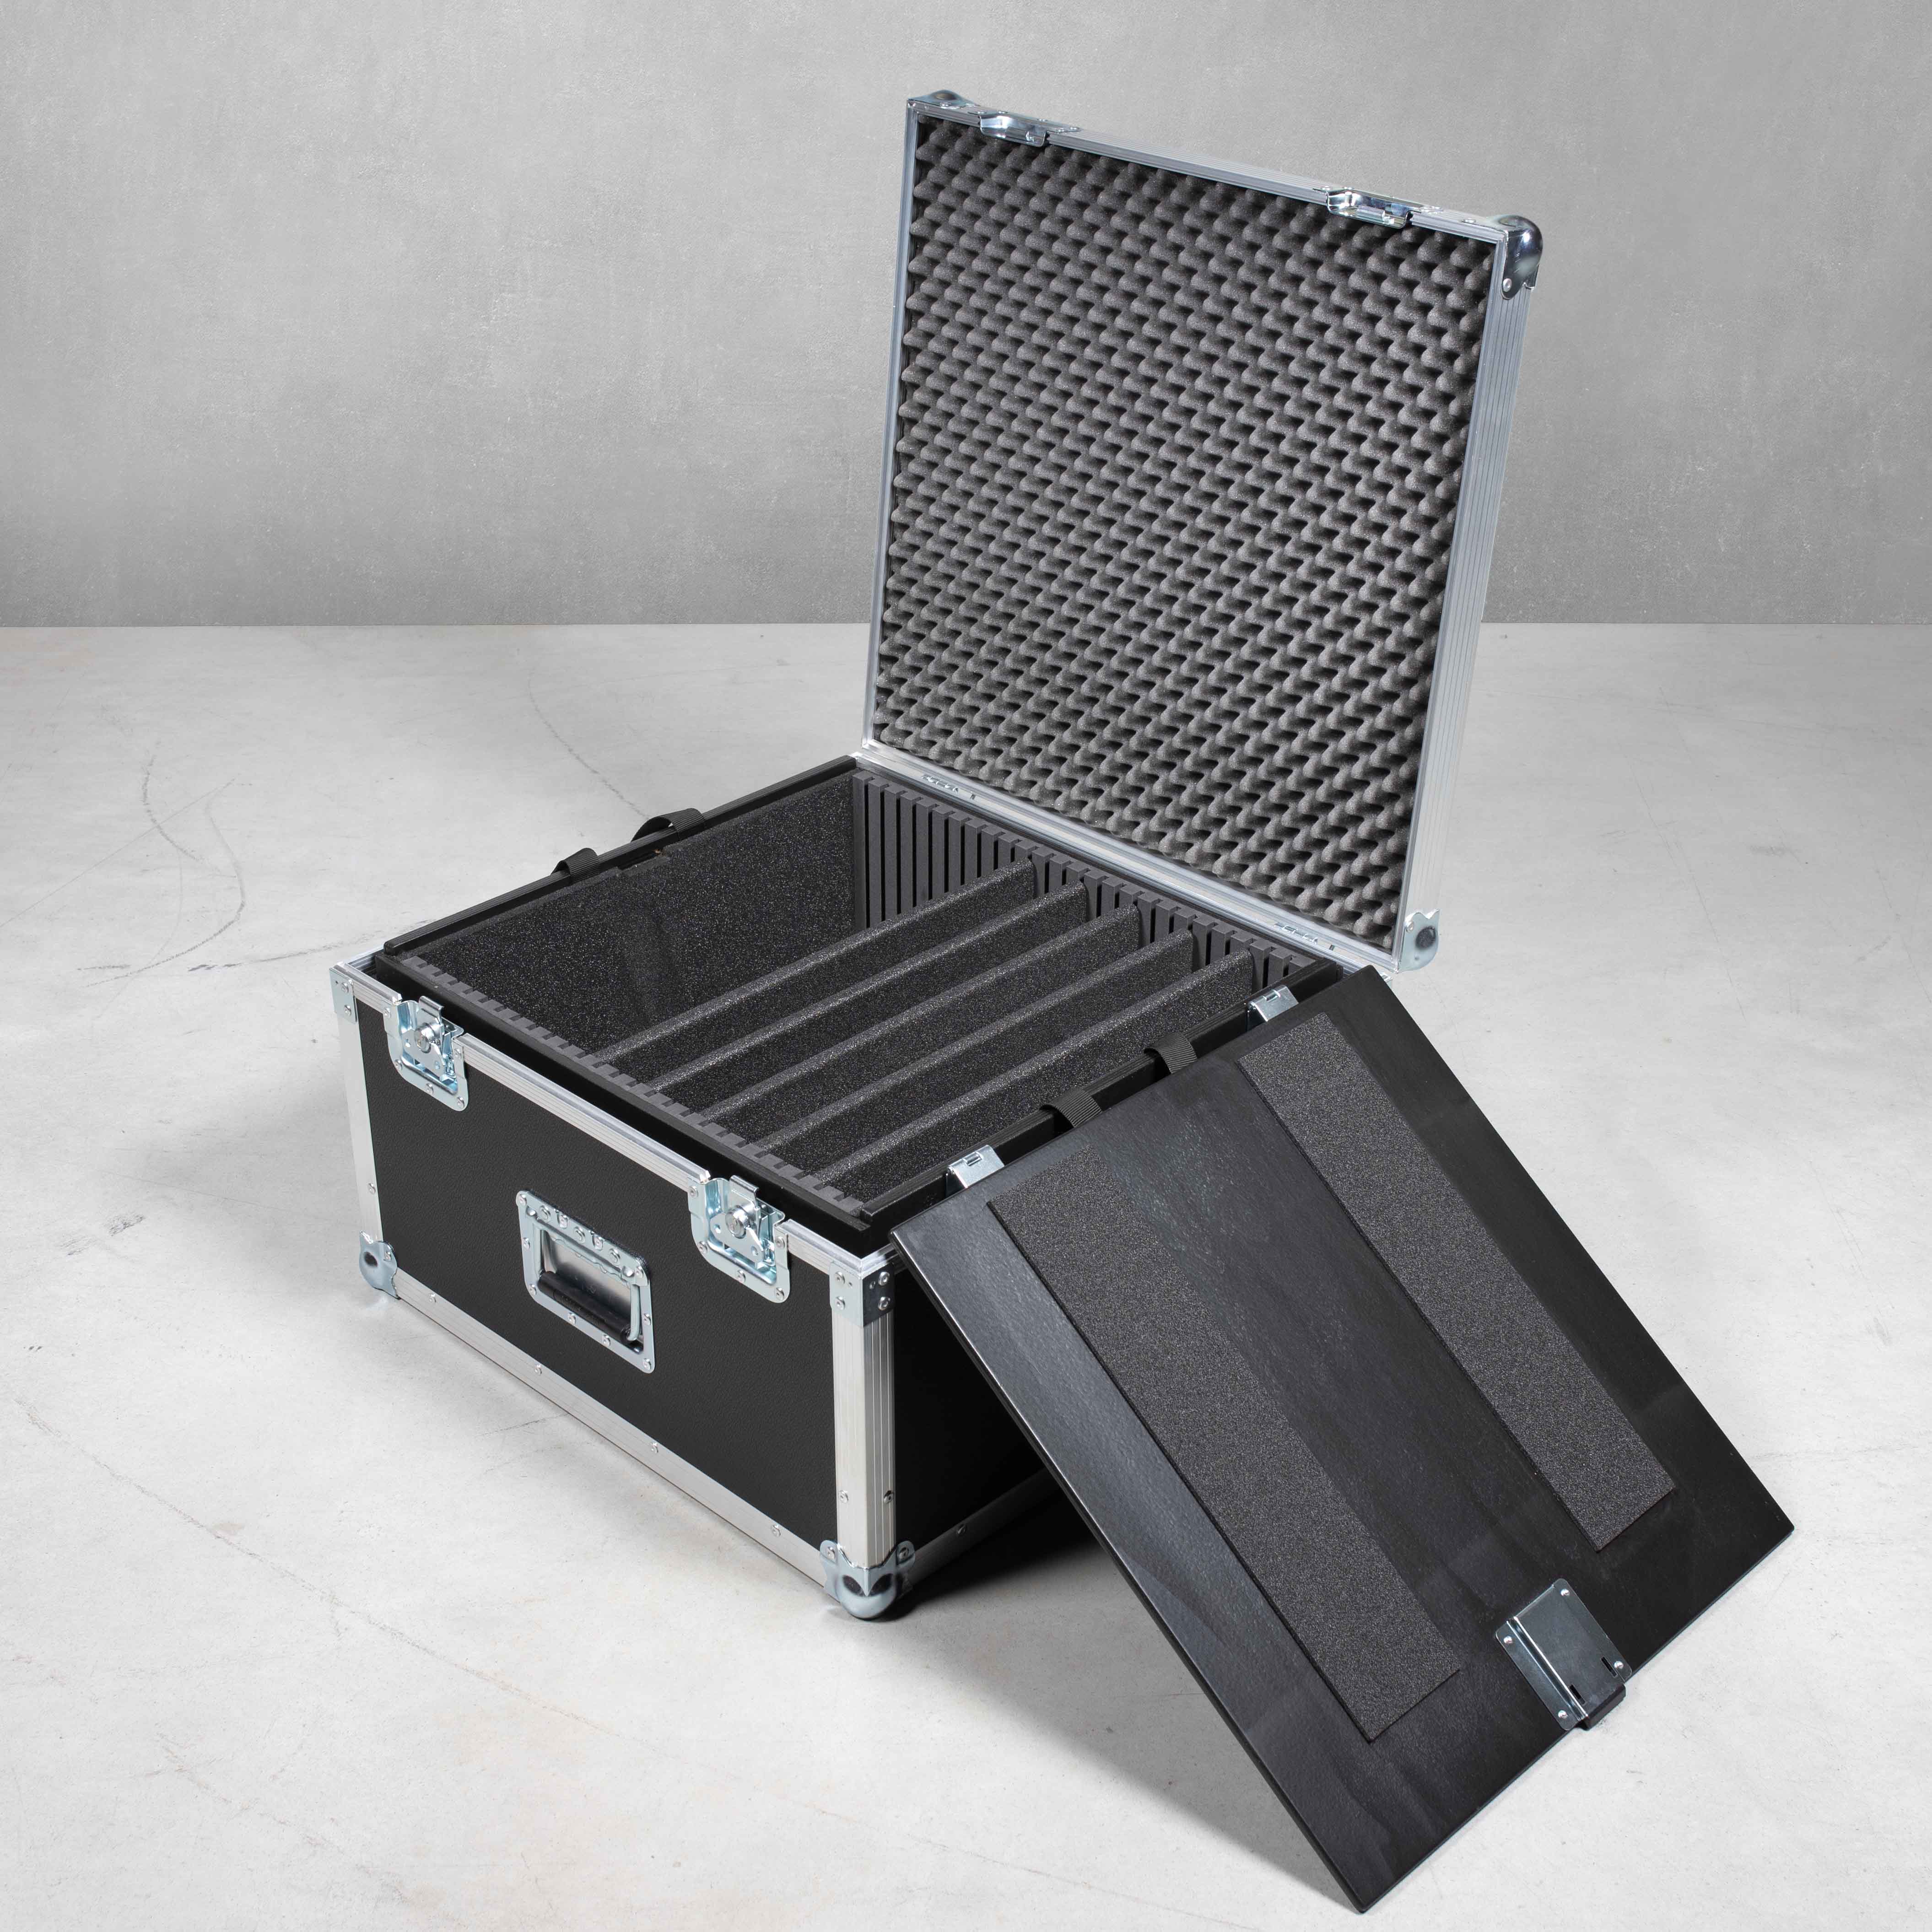 Packcaseeinsatz Universal für 5x Laptops und Zubehör (Für Packcase ohne Stapelschalen)